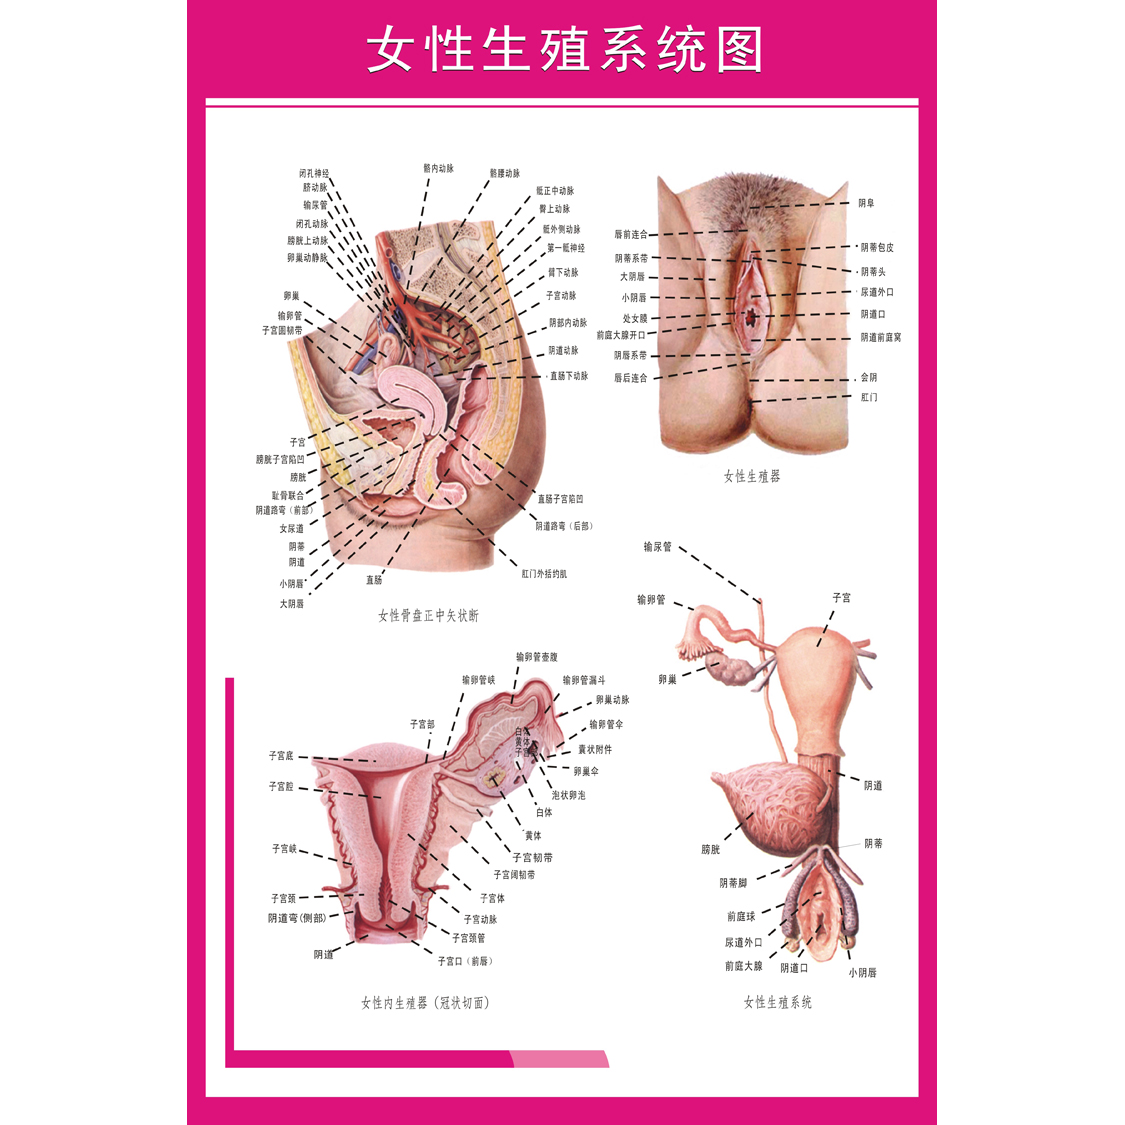 女性生殖器解剖图 医院宣传海报挂图 妇科知识海报宫颈疾病示意图